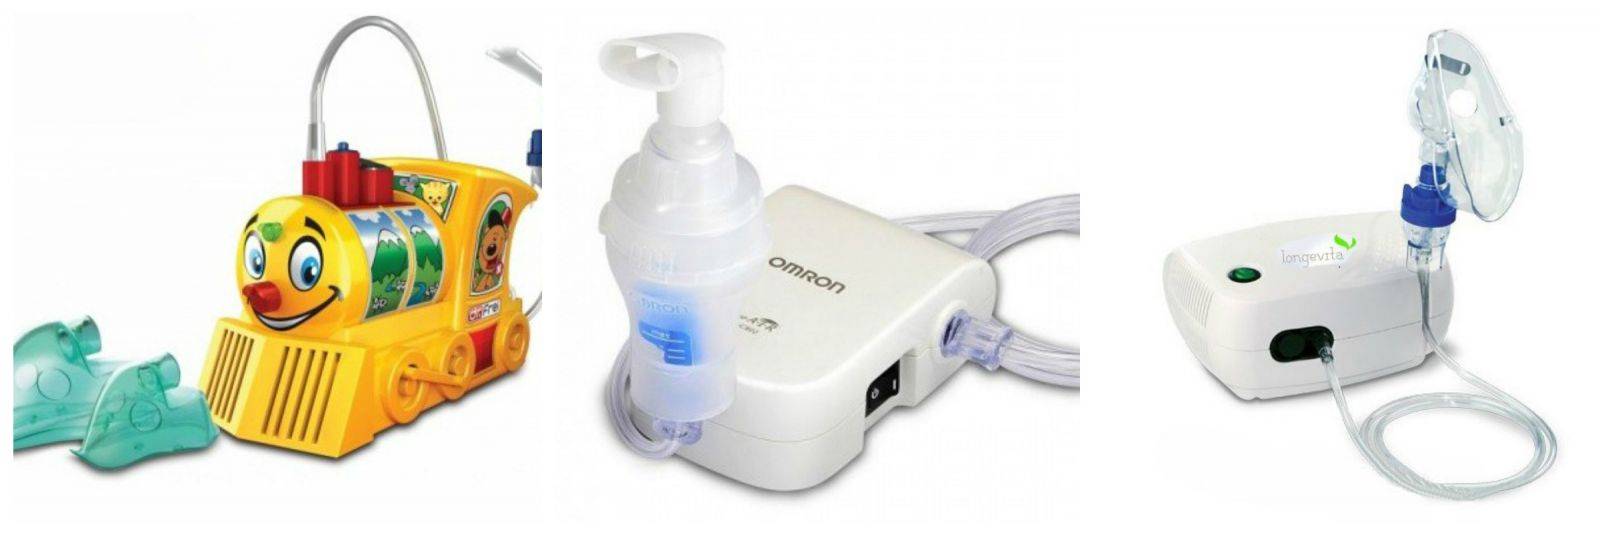 Ингаляторы для детей: как выбрать лучший ингалятор-небулайзер для лечения кашля и насморка у ребенка